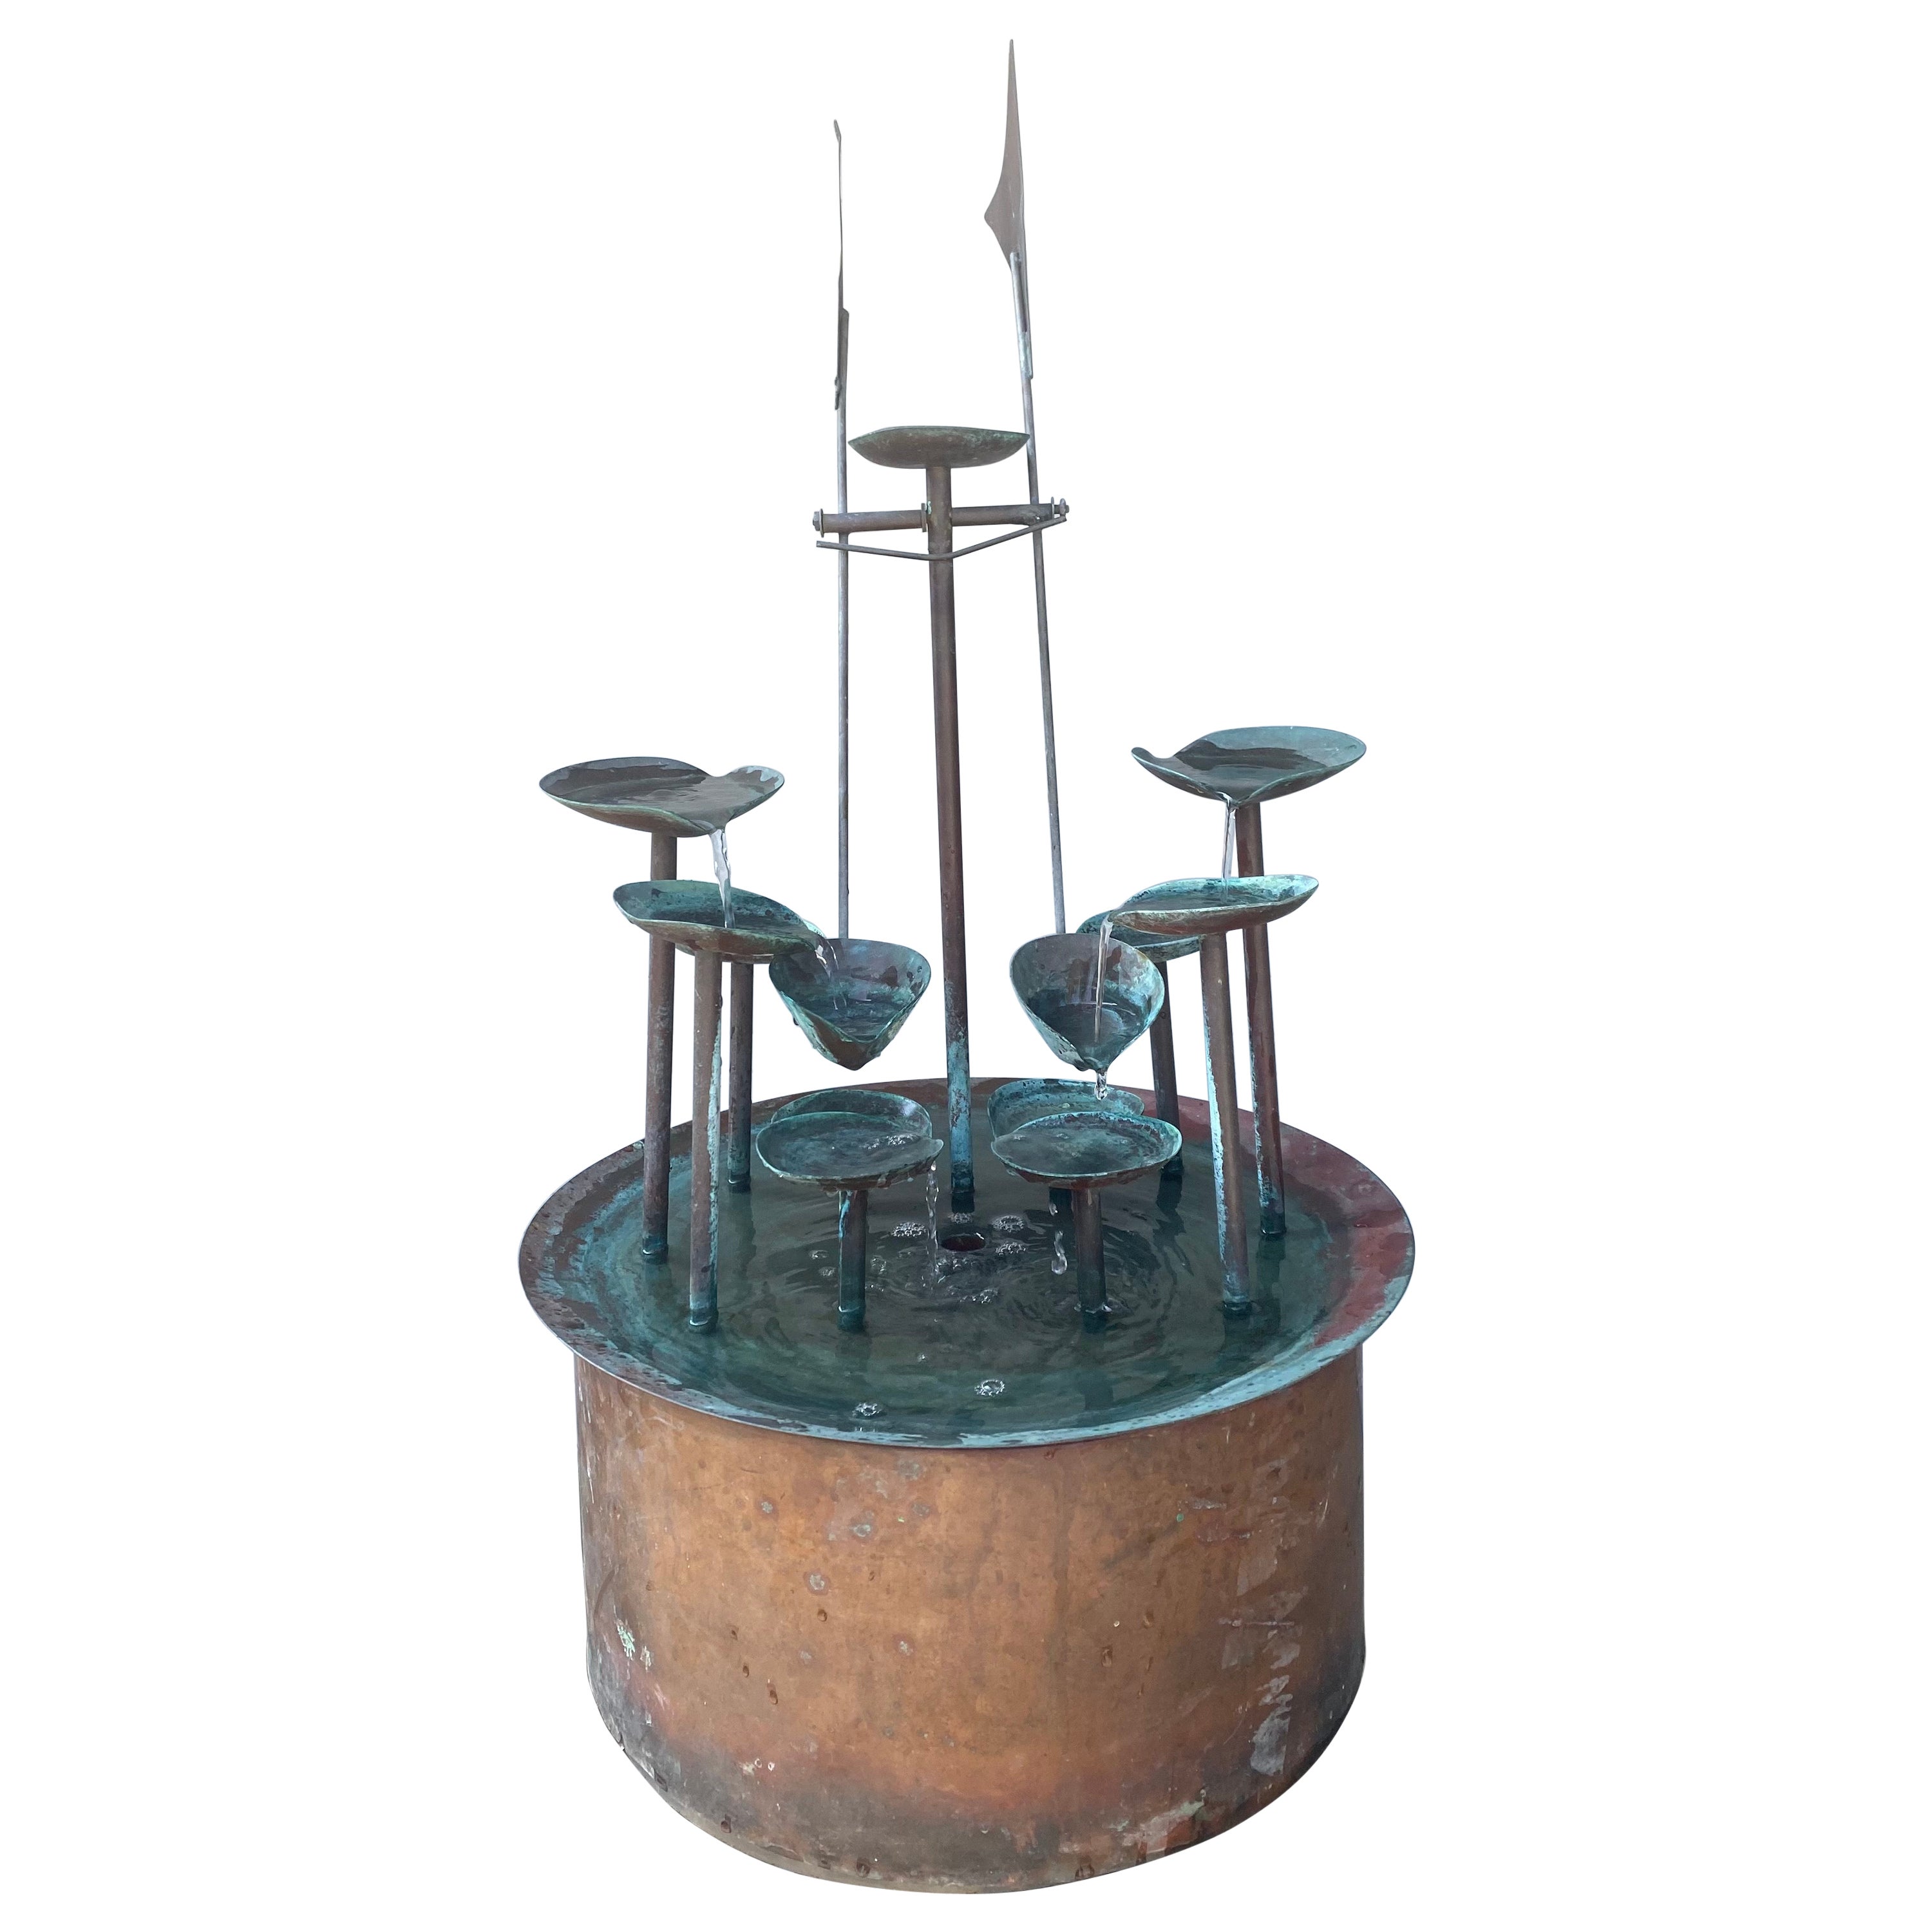 Merveilleuse fontaine / eau moderniste en cuivre à mouvement cinétique, fabriquée à la main